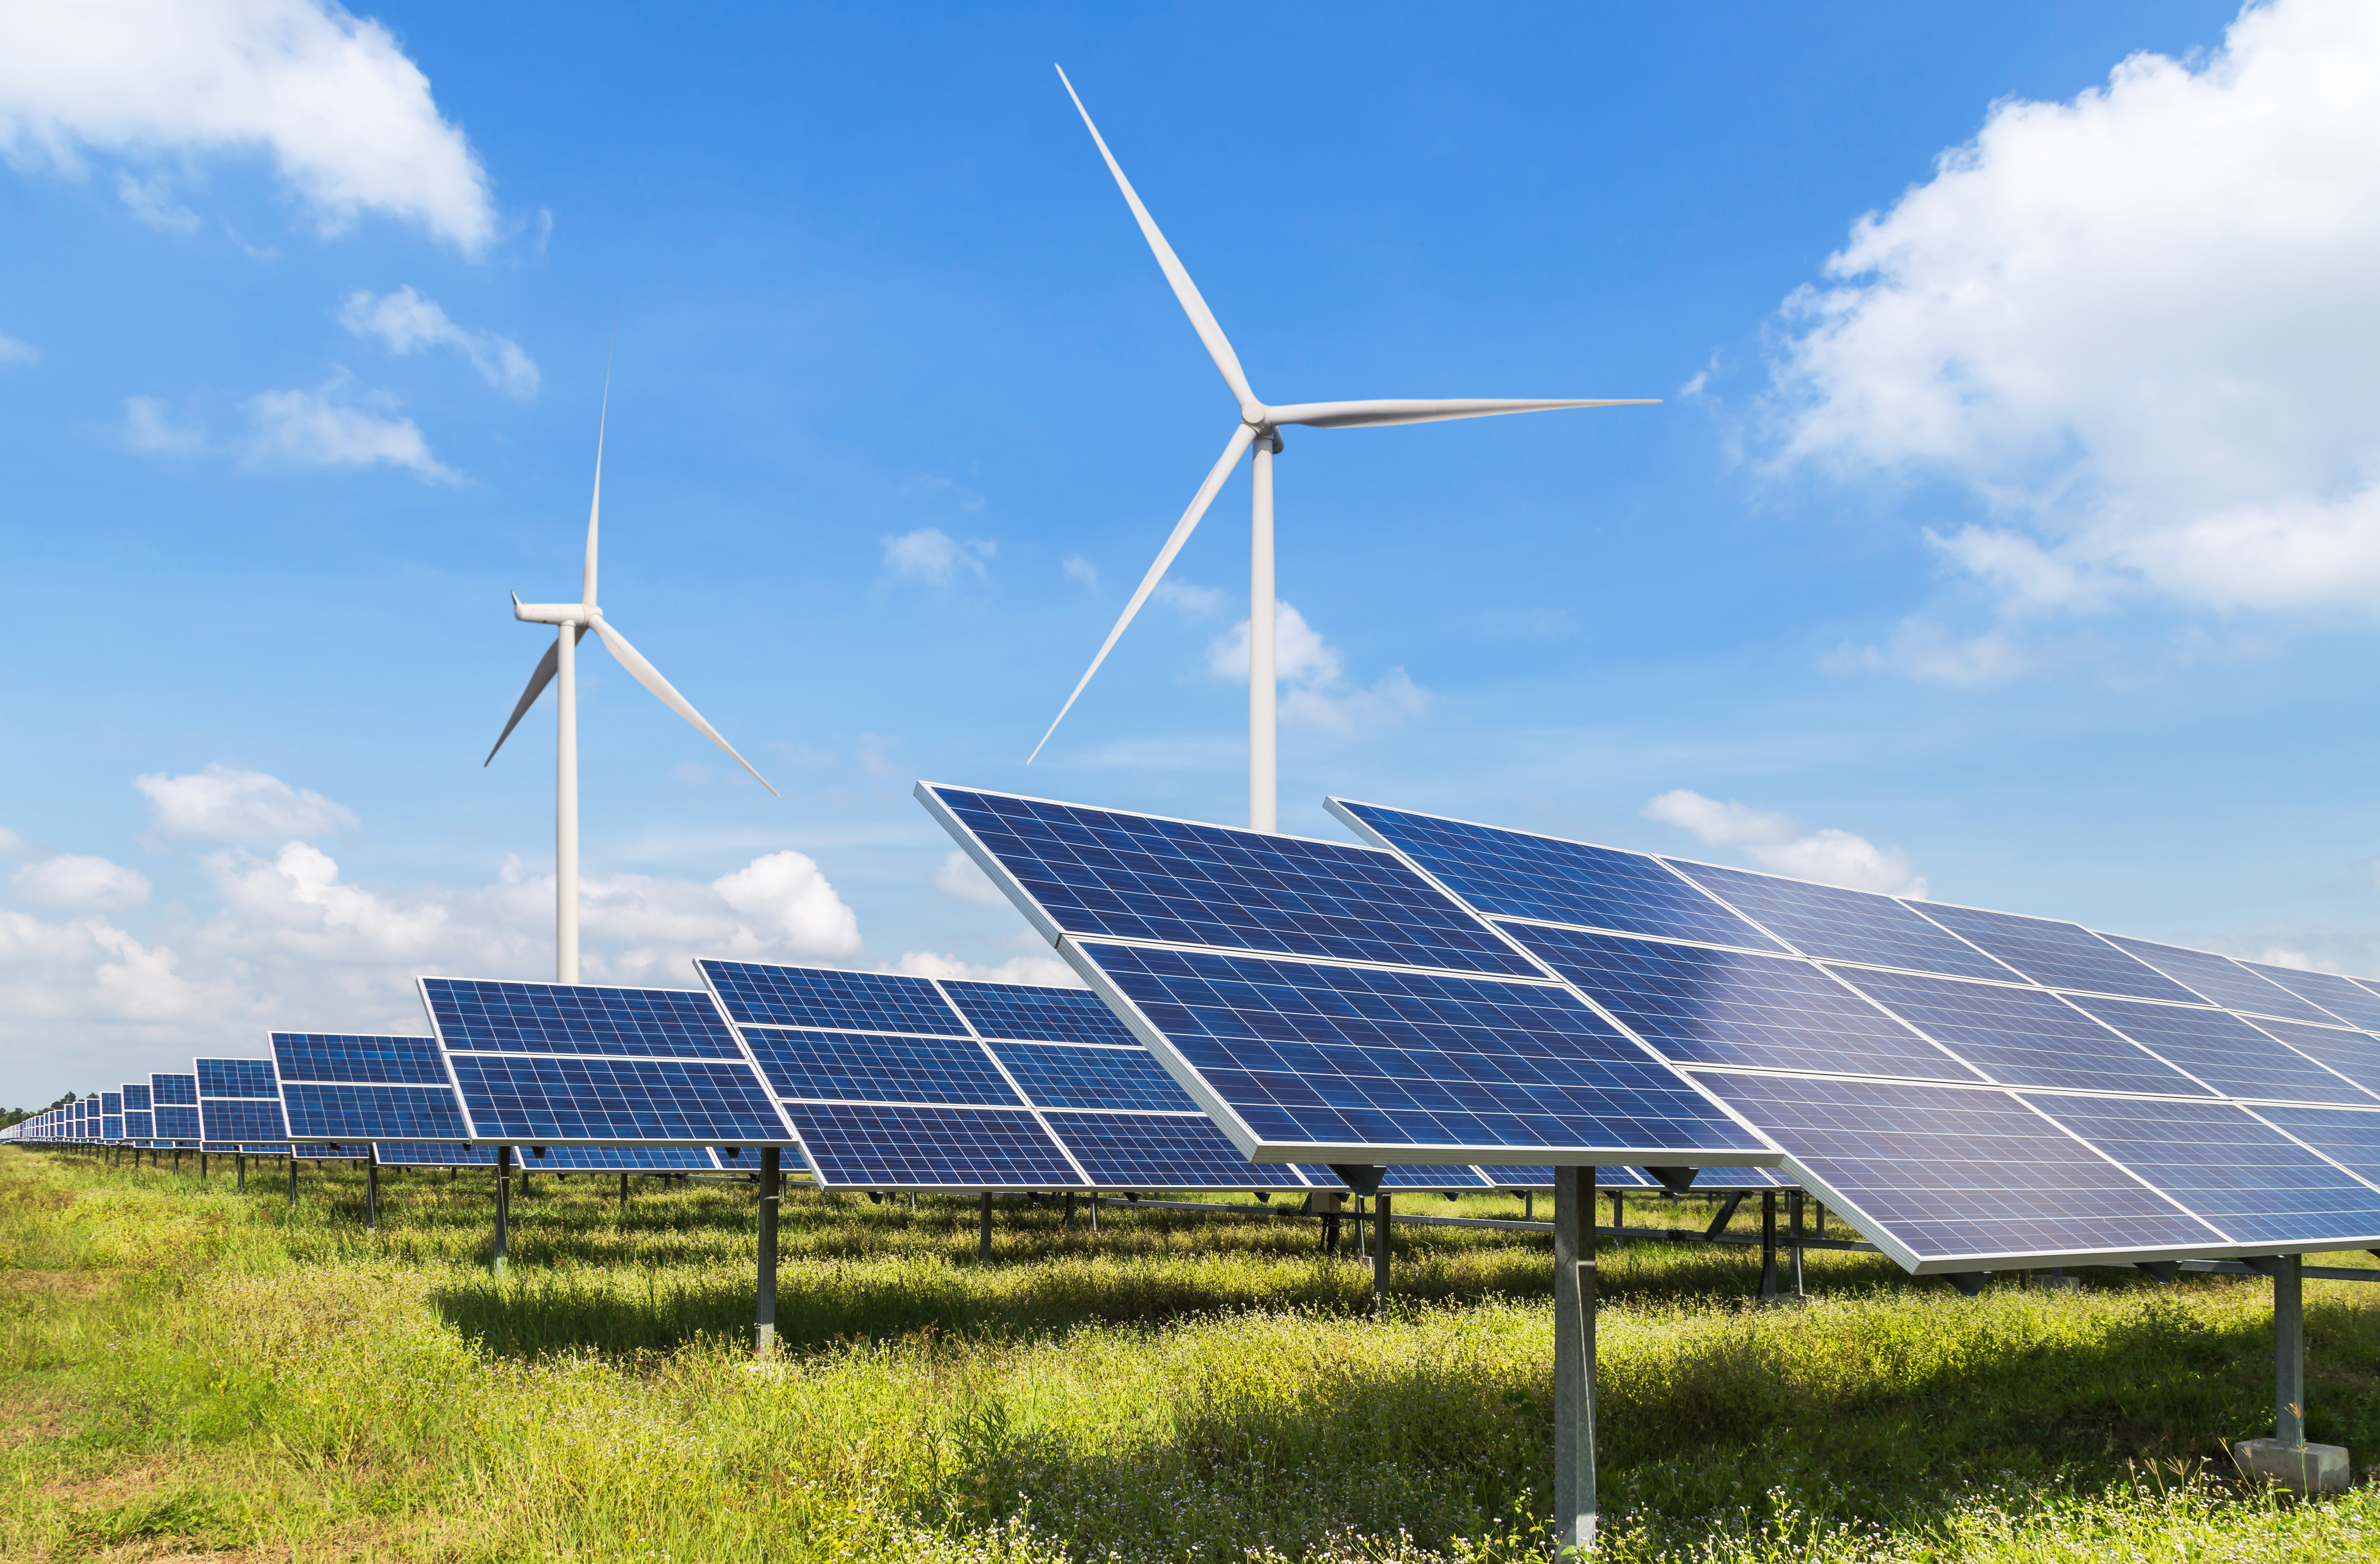 Éoliennes et panneaux solaires, deux types de production d'énergie verte. © Soonthorn, Adobe Stock